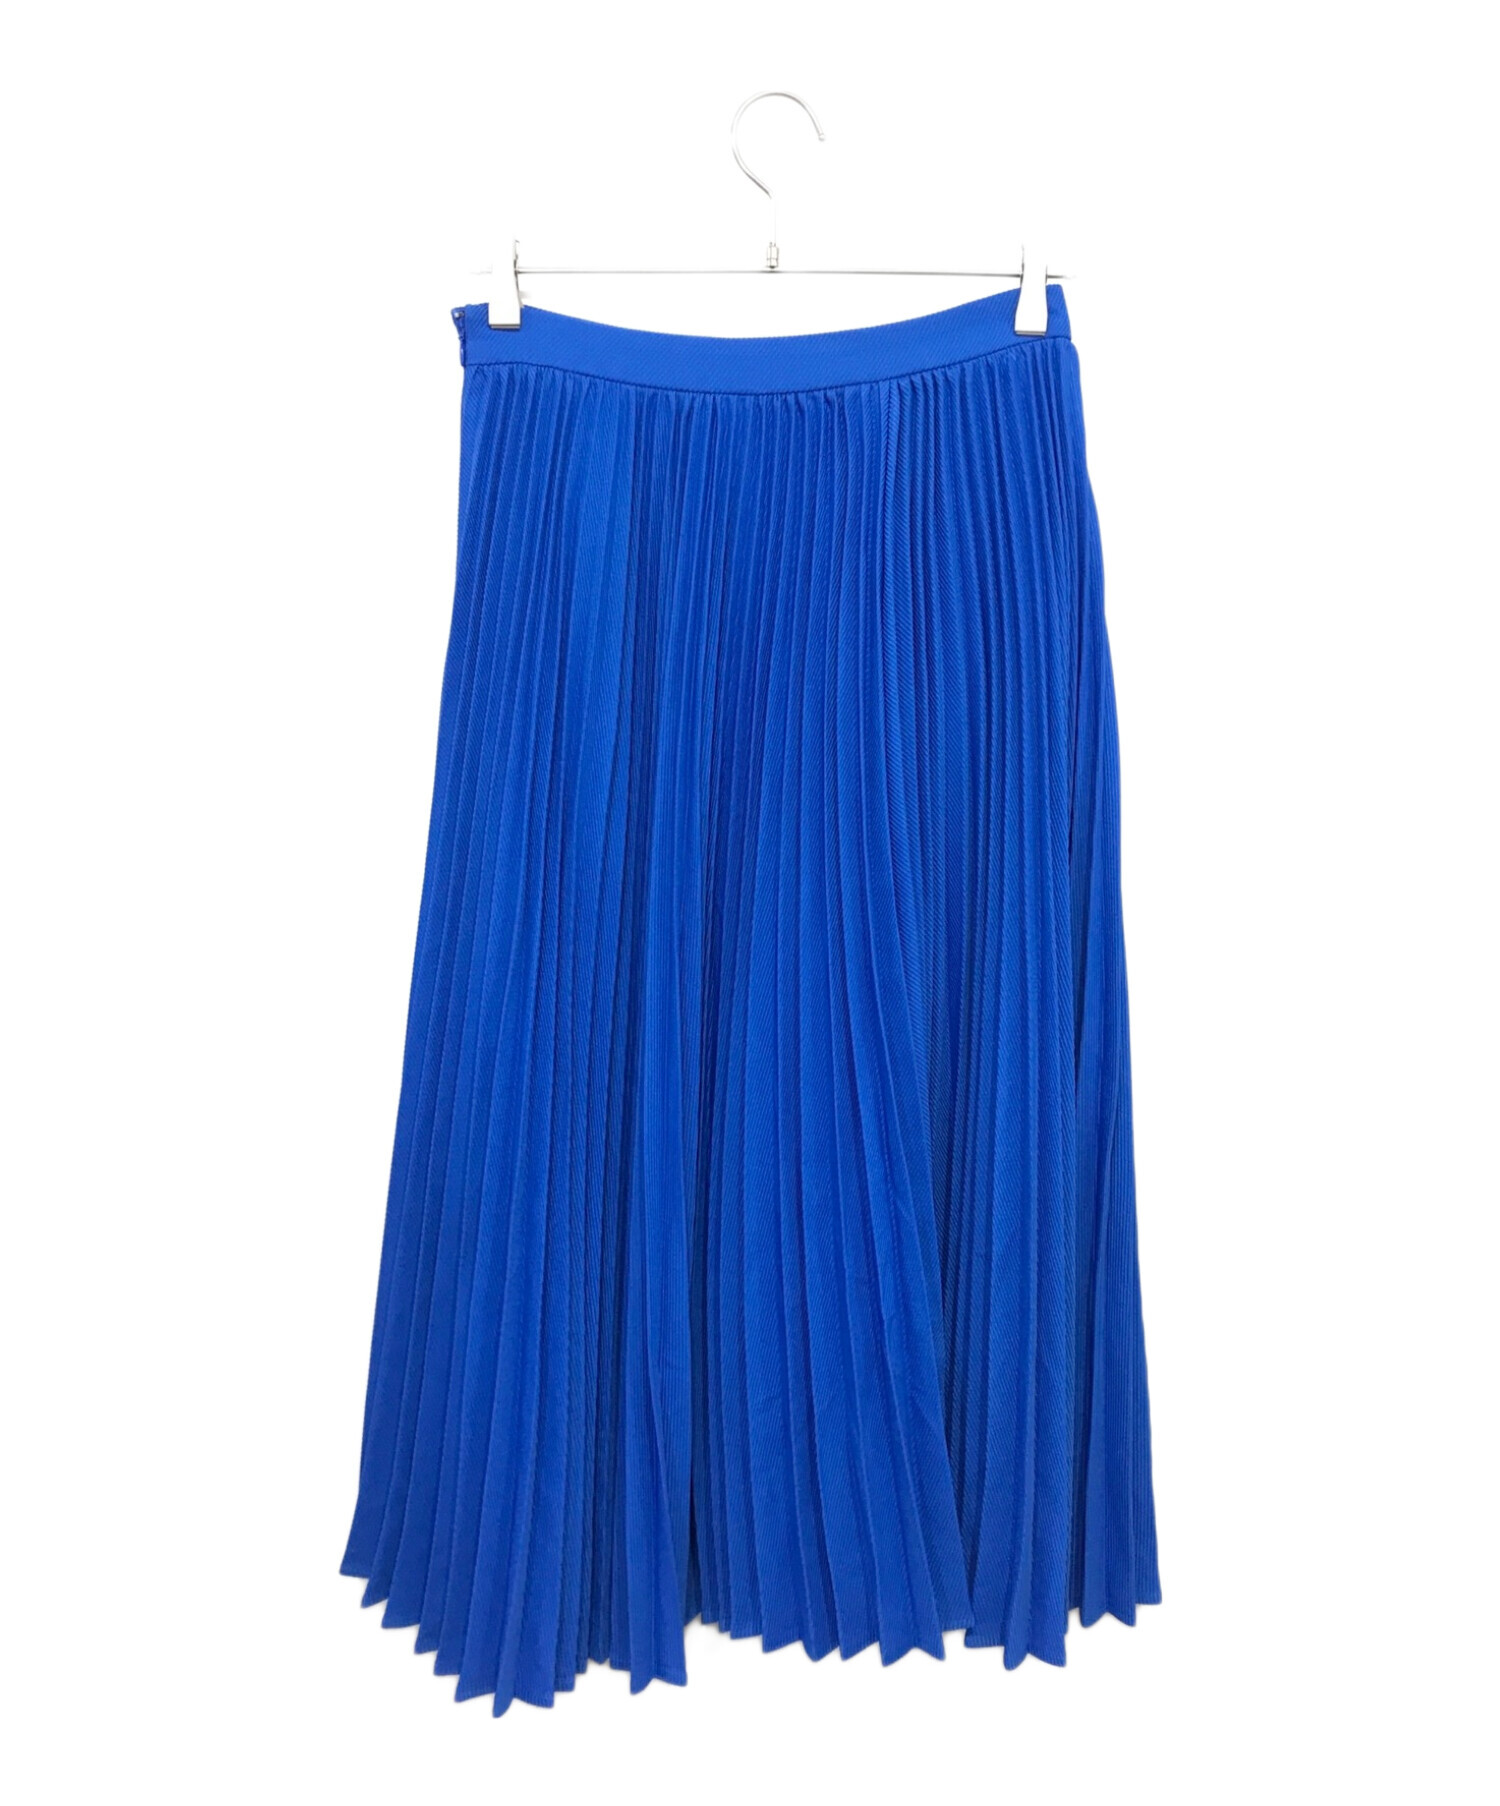 myclozette cen (マイクローゼット セン) プリーツスカート ブルー サイズ:40